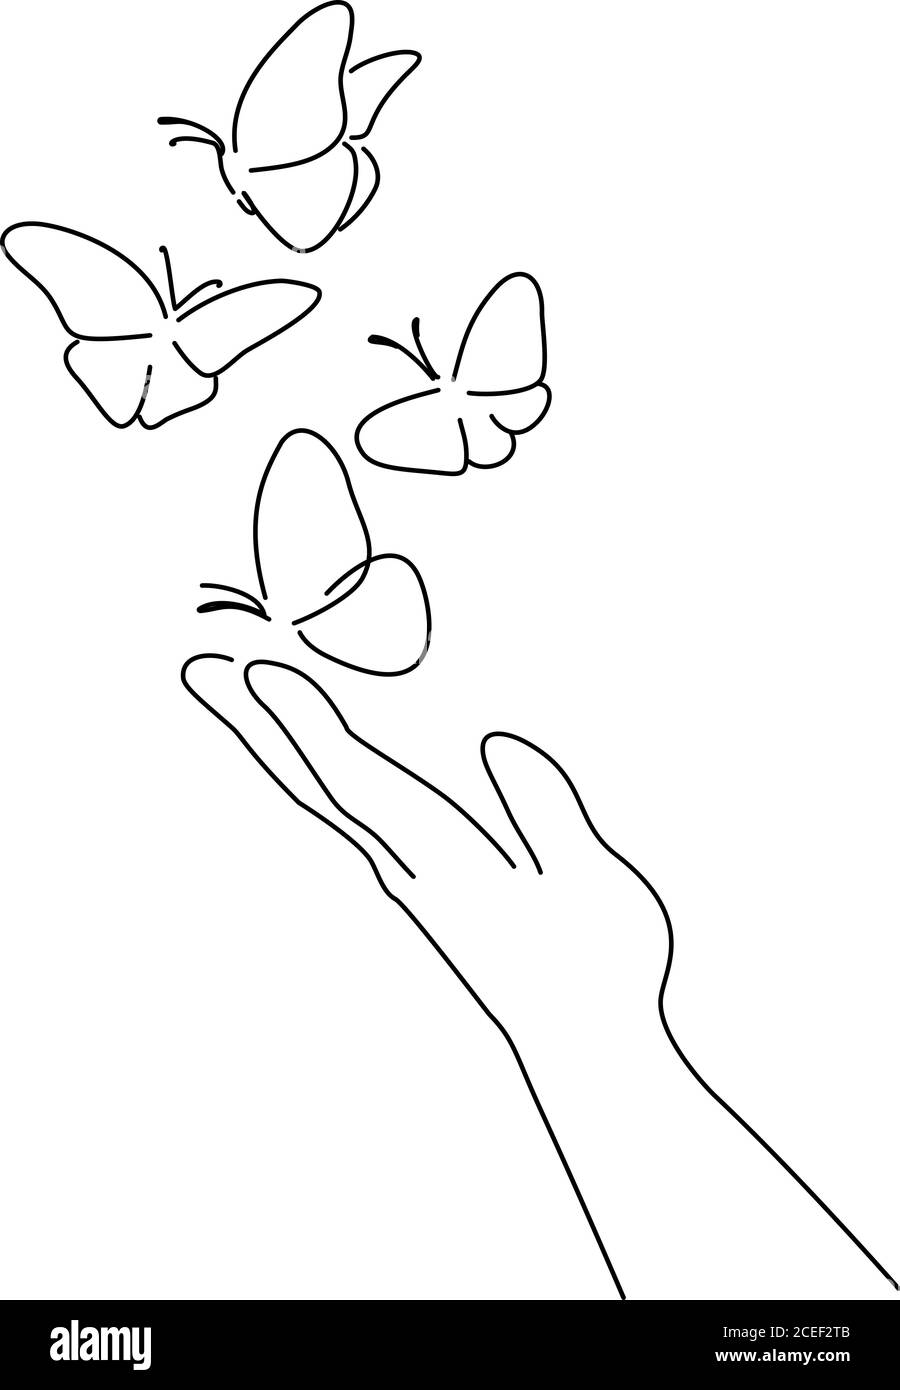 Mano con mariposa en el dedo. Estilo de dibujo de líneas. Croquis lineal negro aislado sobre fondo blanco. Ilustración vectorial Ilustración del Vector